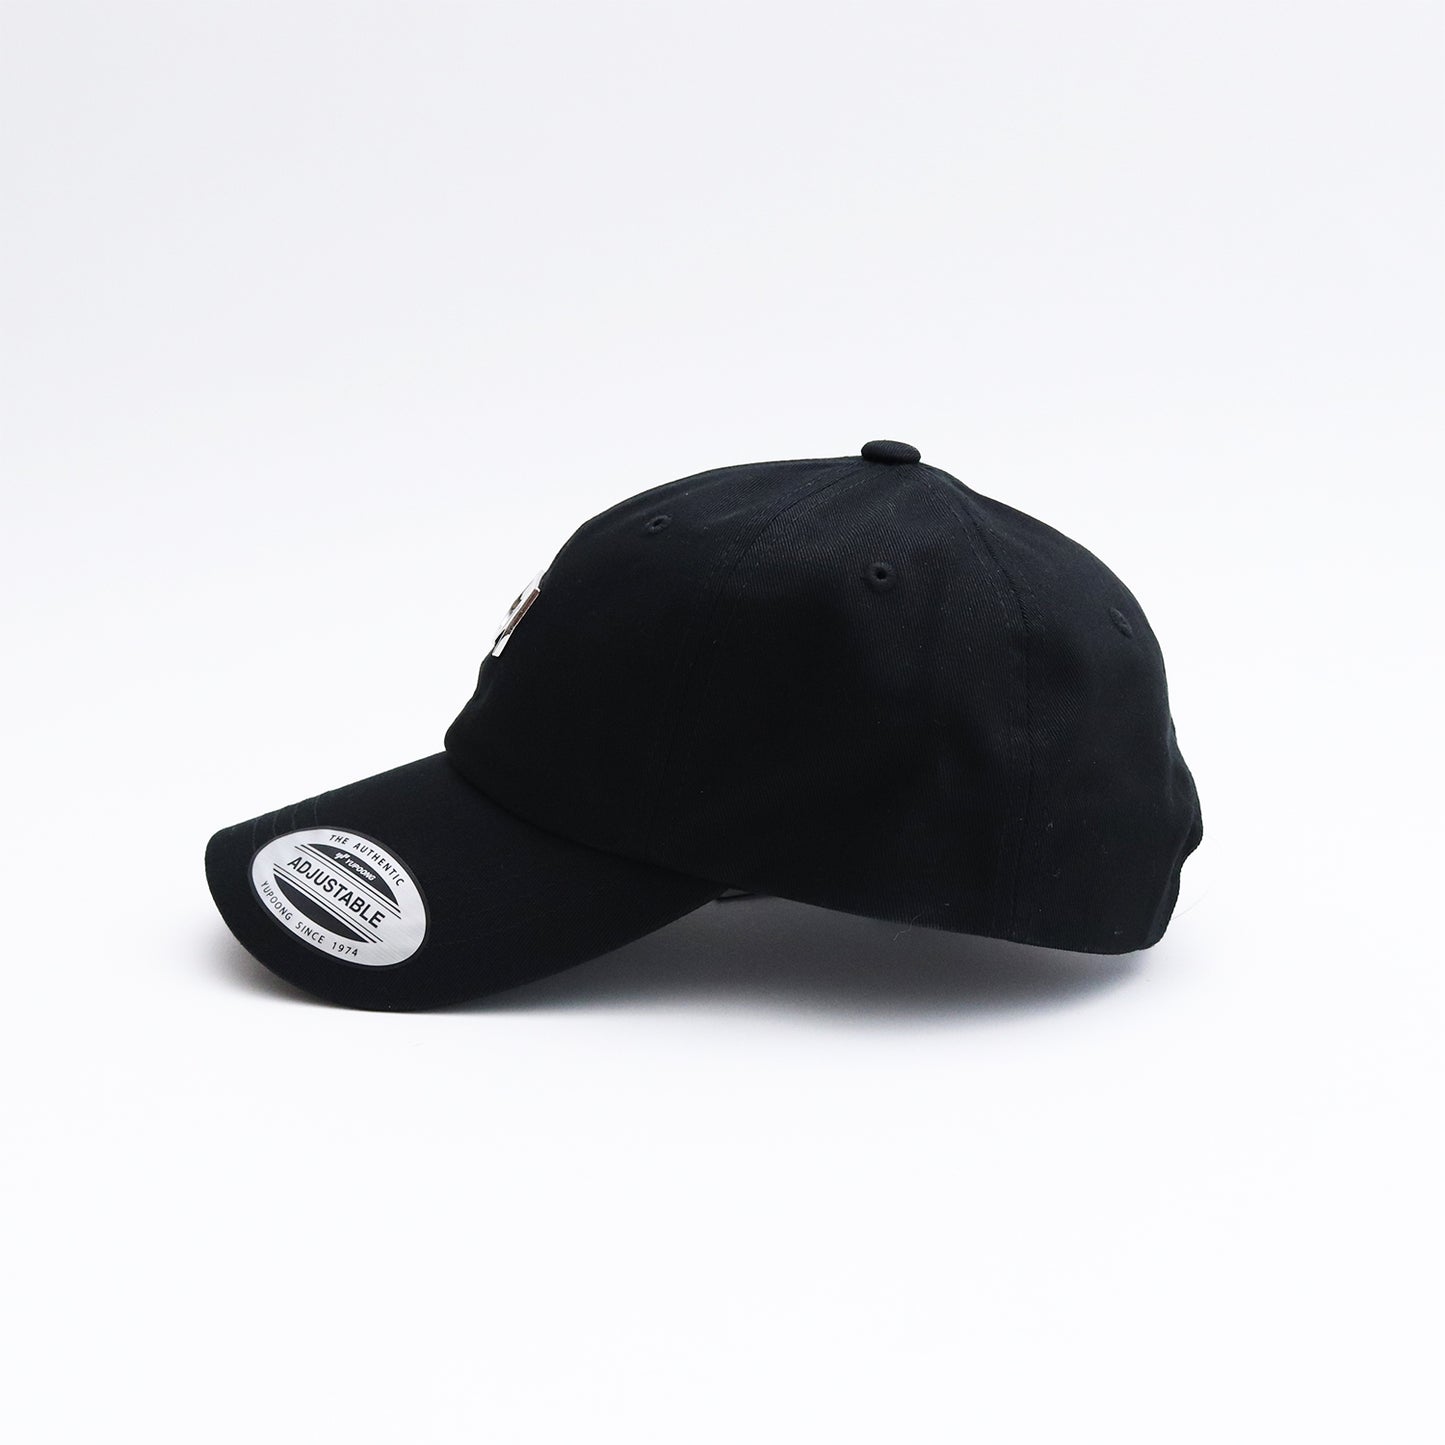 METAL LOGO CAP #Black [SHBSC001]